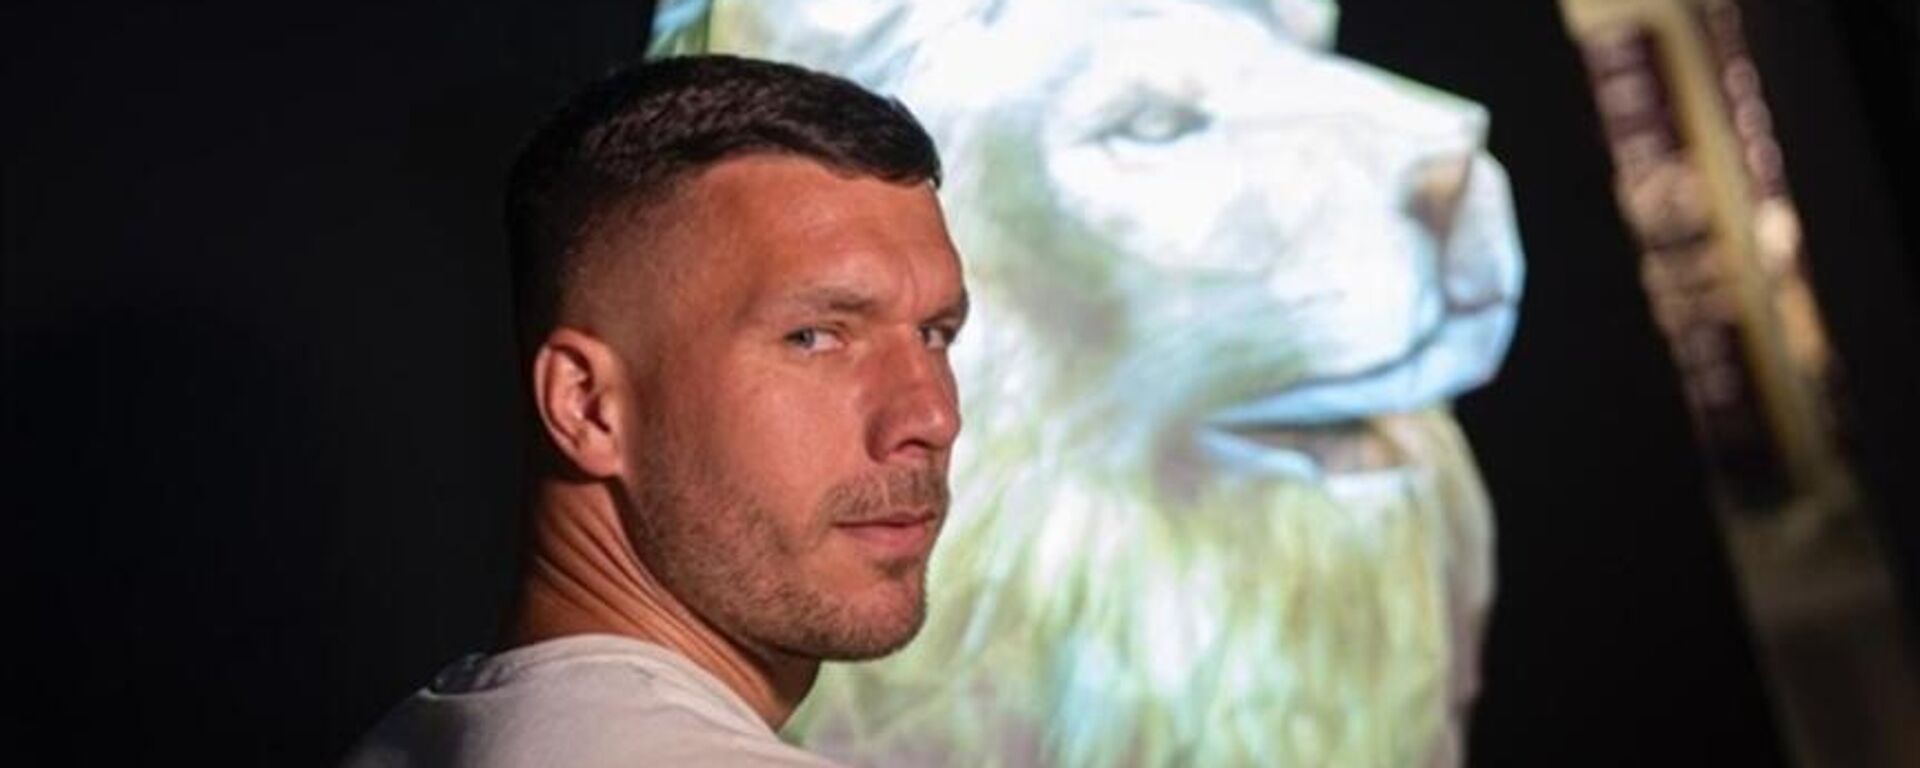 Nef Stadyumu'nu ziyaret eden Galatasaray'ın eski futbolcusu Lukas Podolski, sarı-kırmızılı takımda yaşadığı tüm anıların kalbinde olduğunu belirterek, Ben gerçek bir aslanım dedi. - Sputnik Türkiye, 1920, 28.05.2022